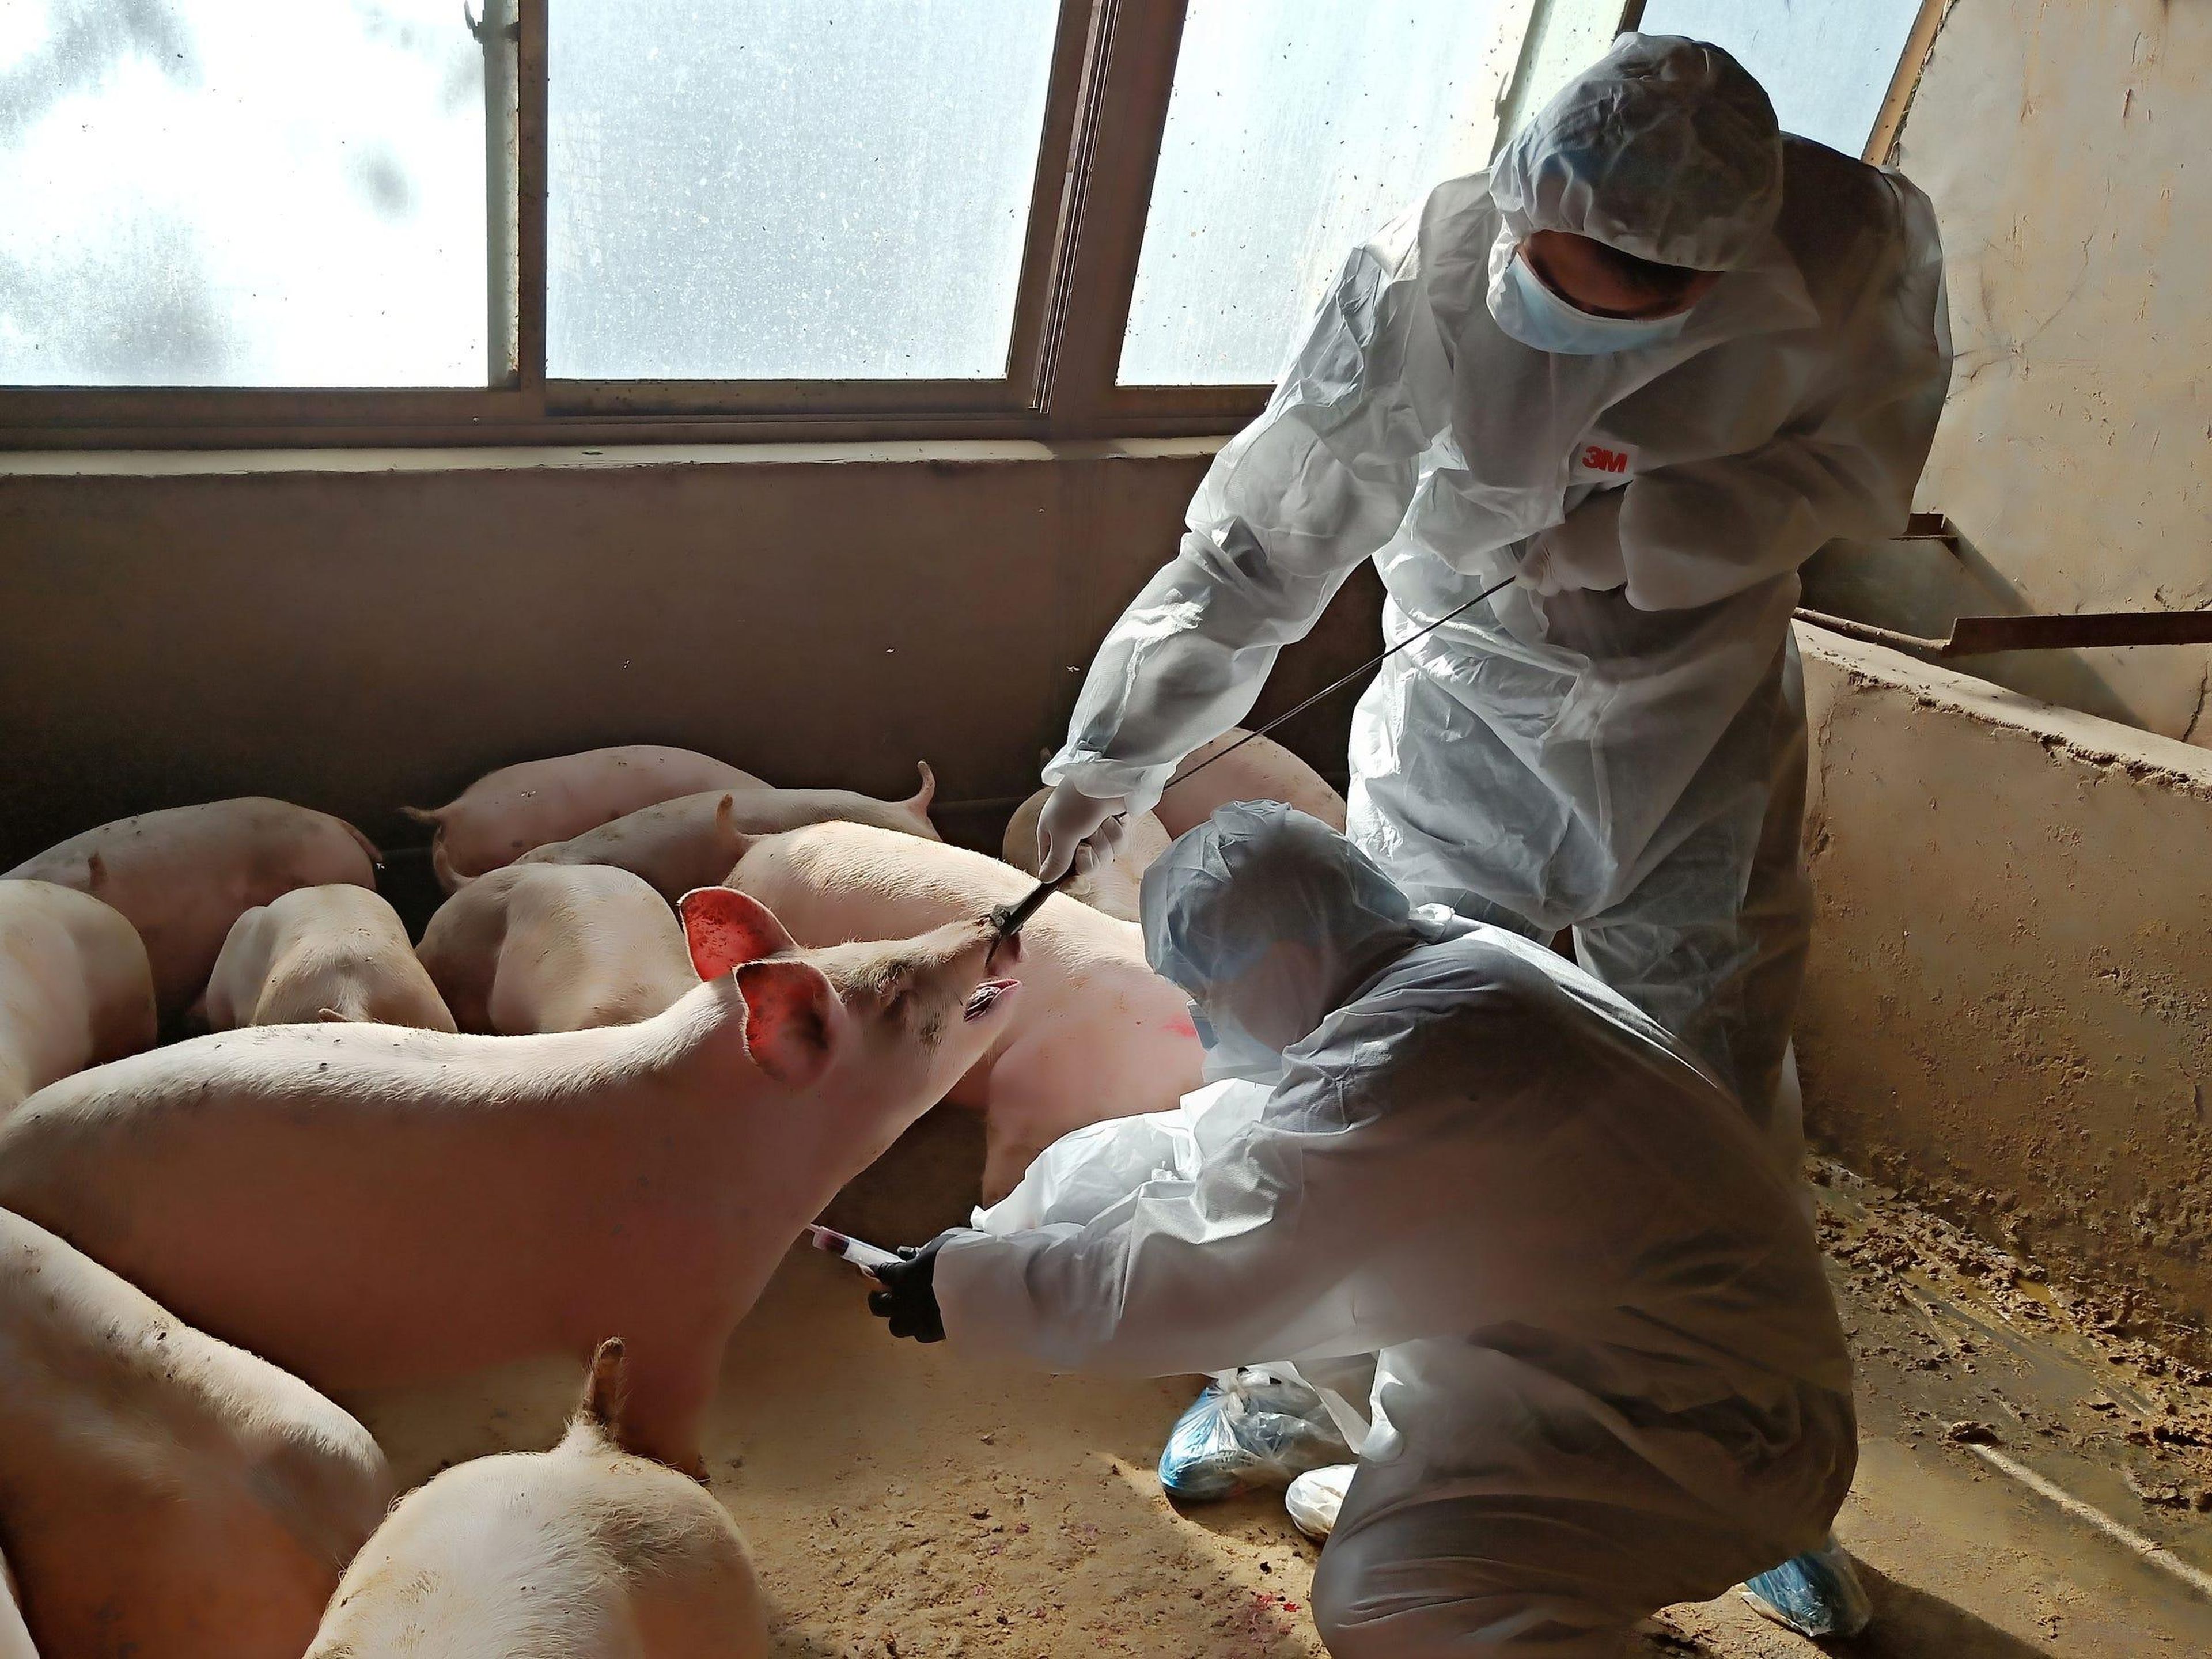 Una nueva cepa de gripe porcina con "potencial pandémico" se acaba de encontrar en cerdos de China.